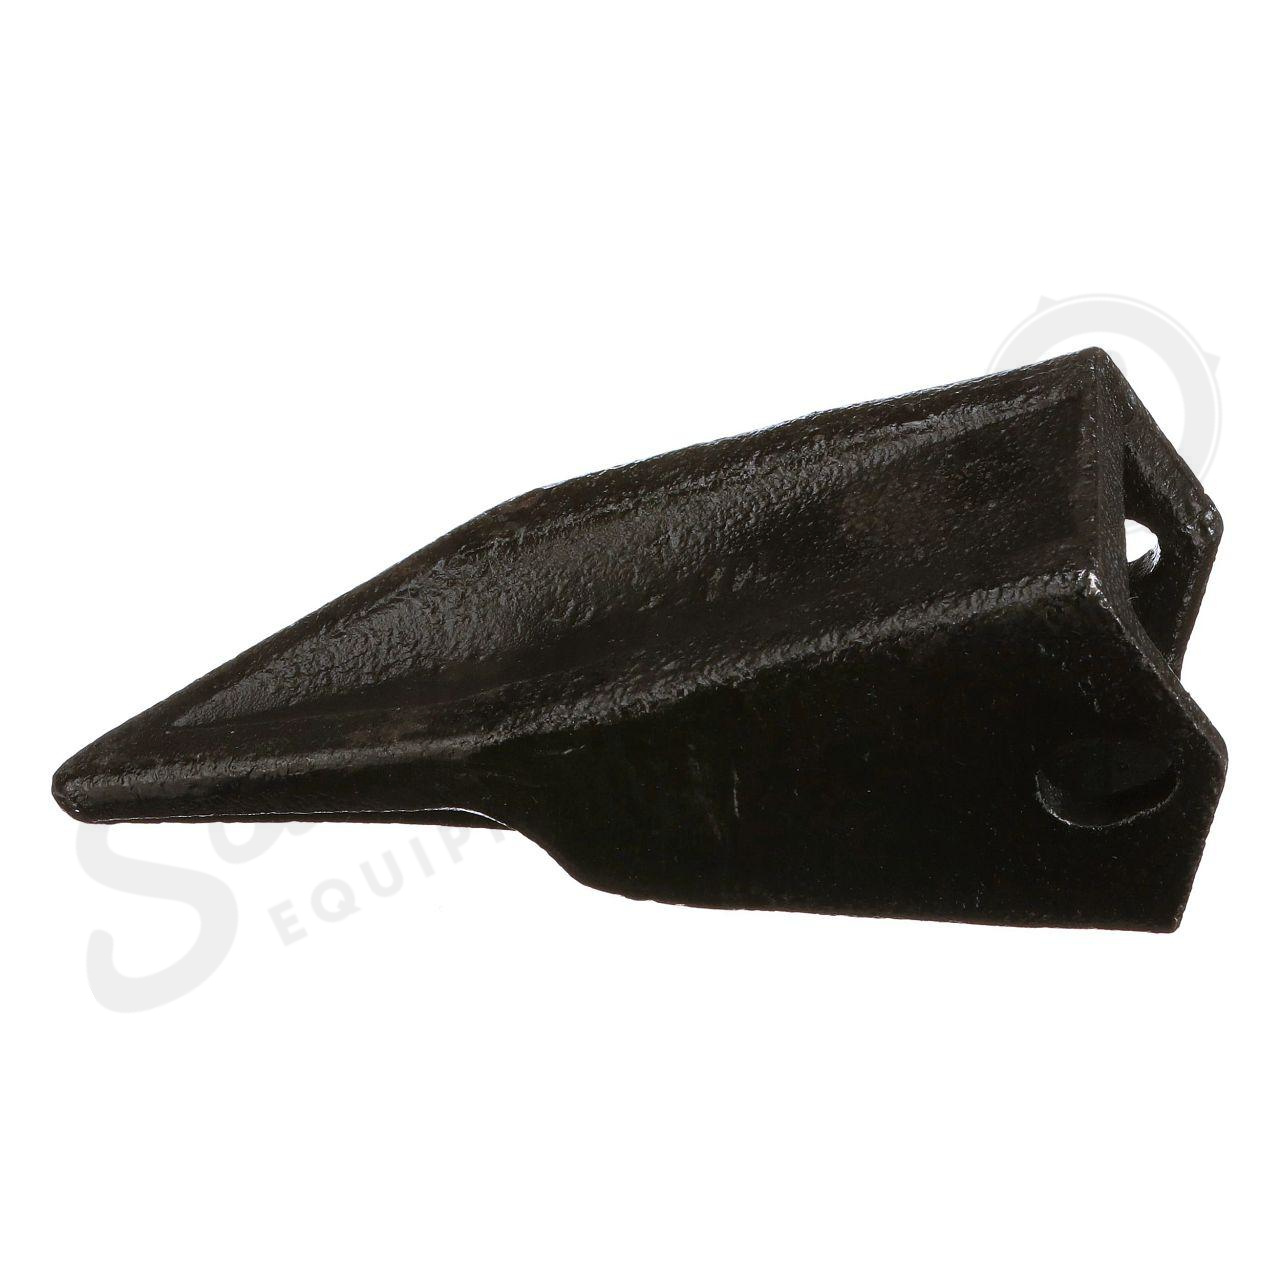 Pin-On Backhoe Bucket Teeth – Cast Steel